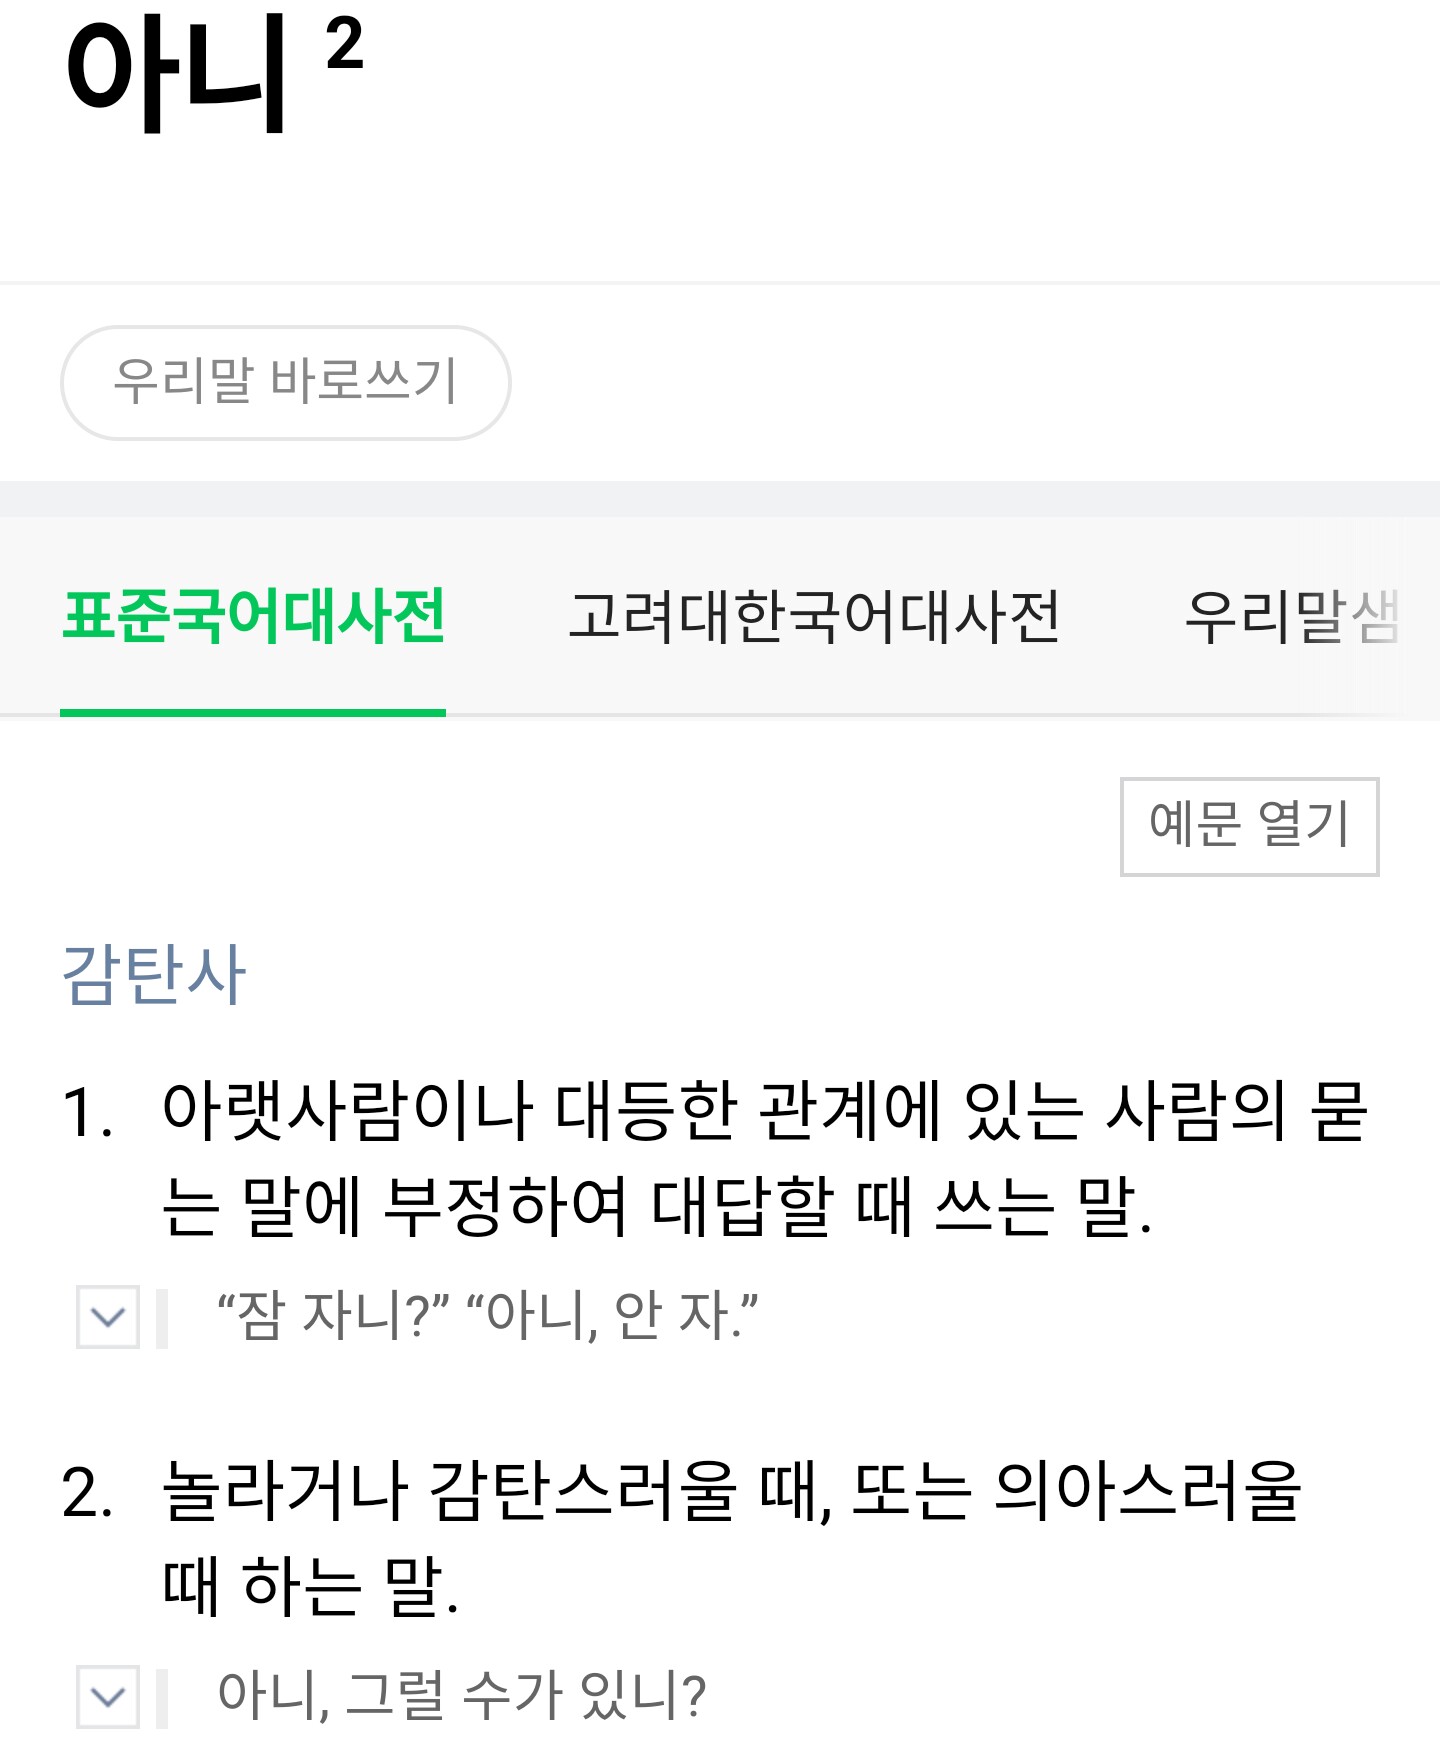 한국말할때 중요한 감탄사 2가지